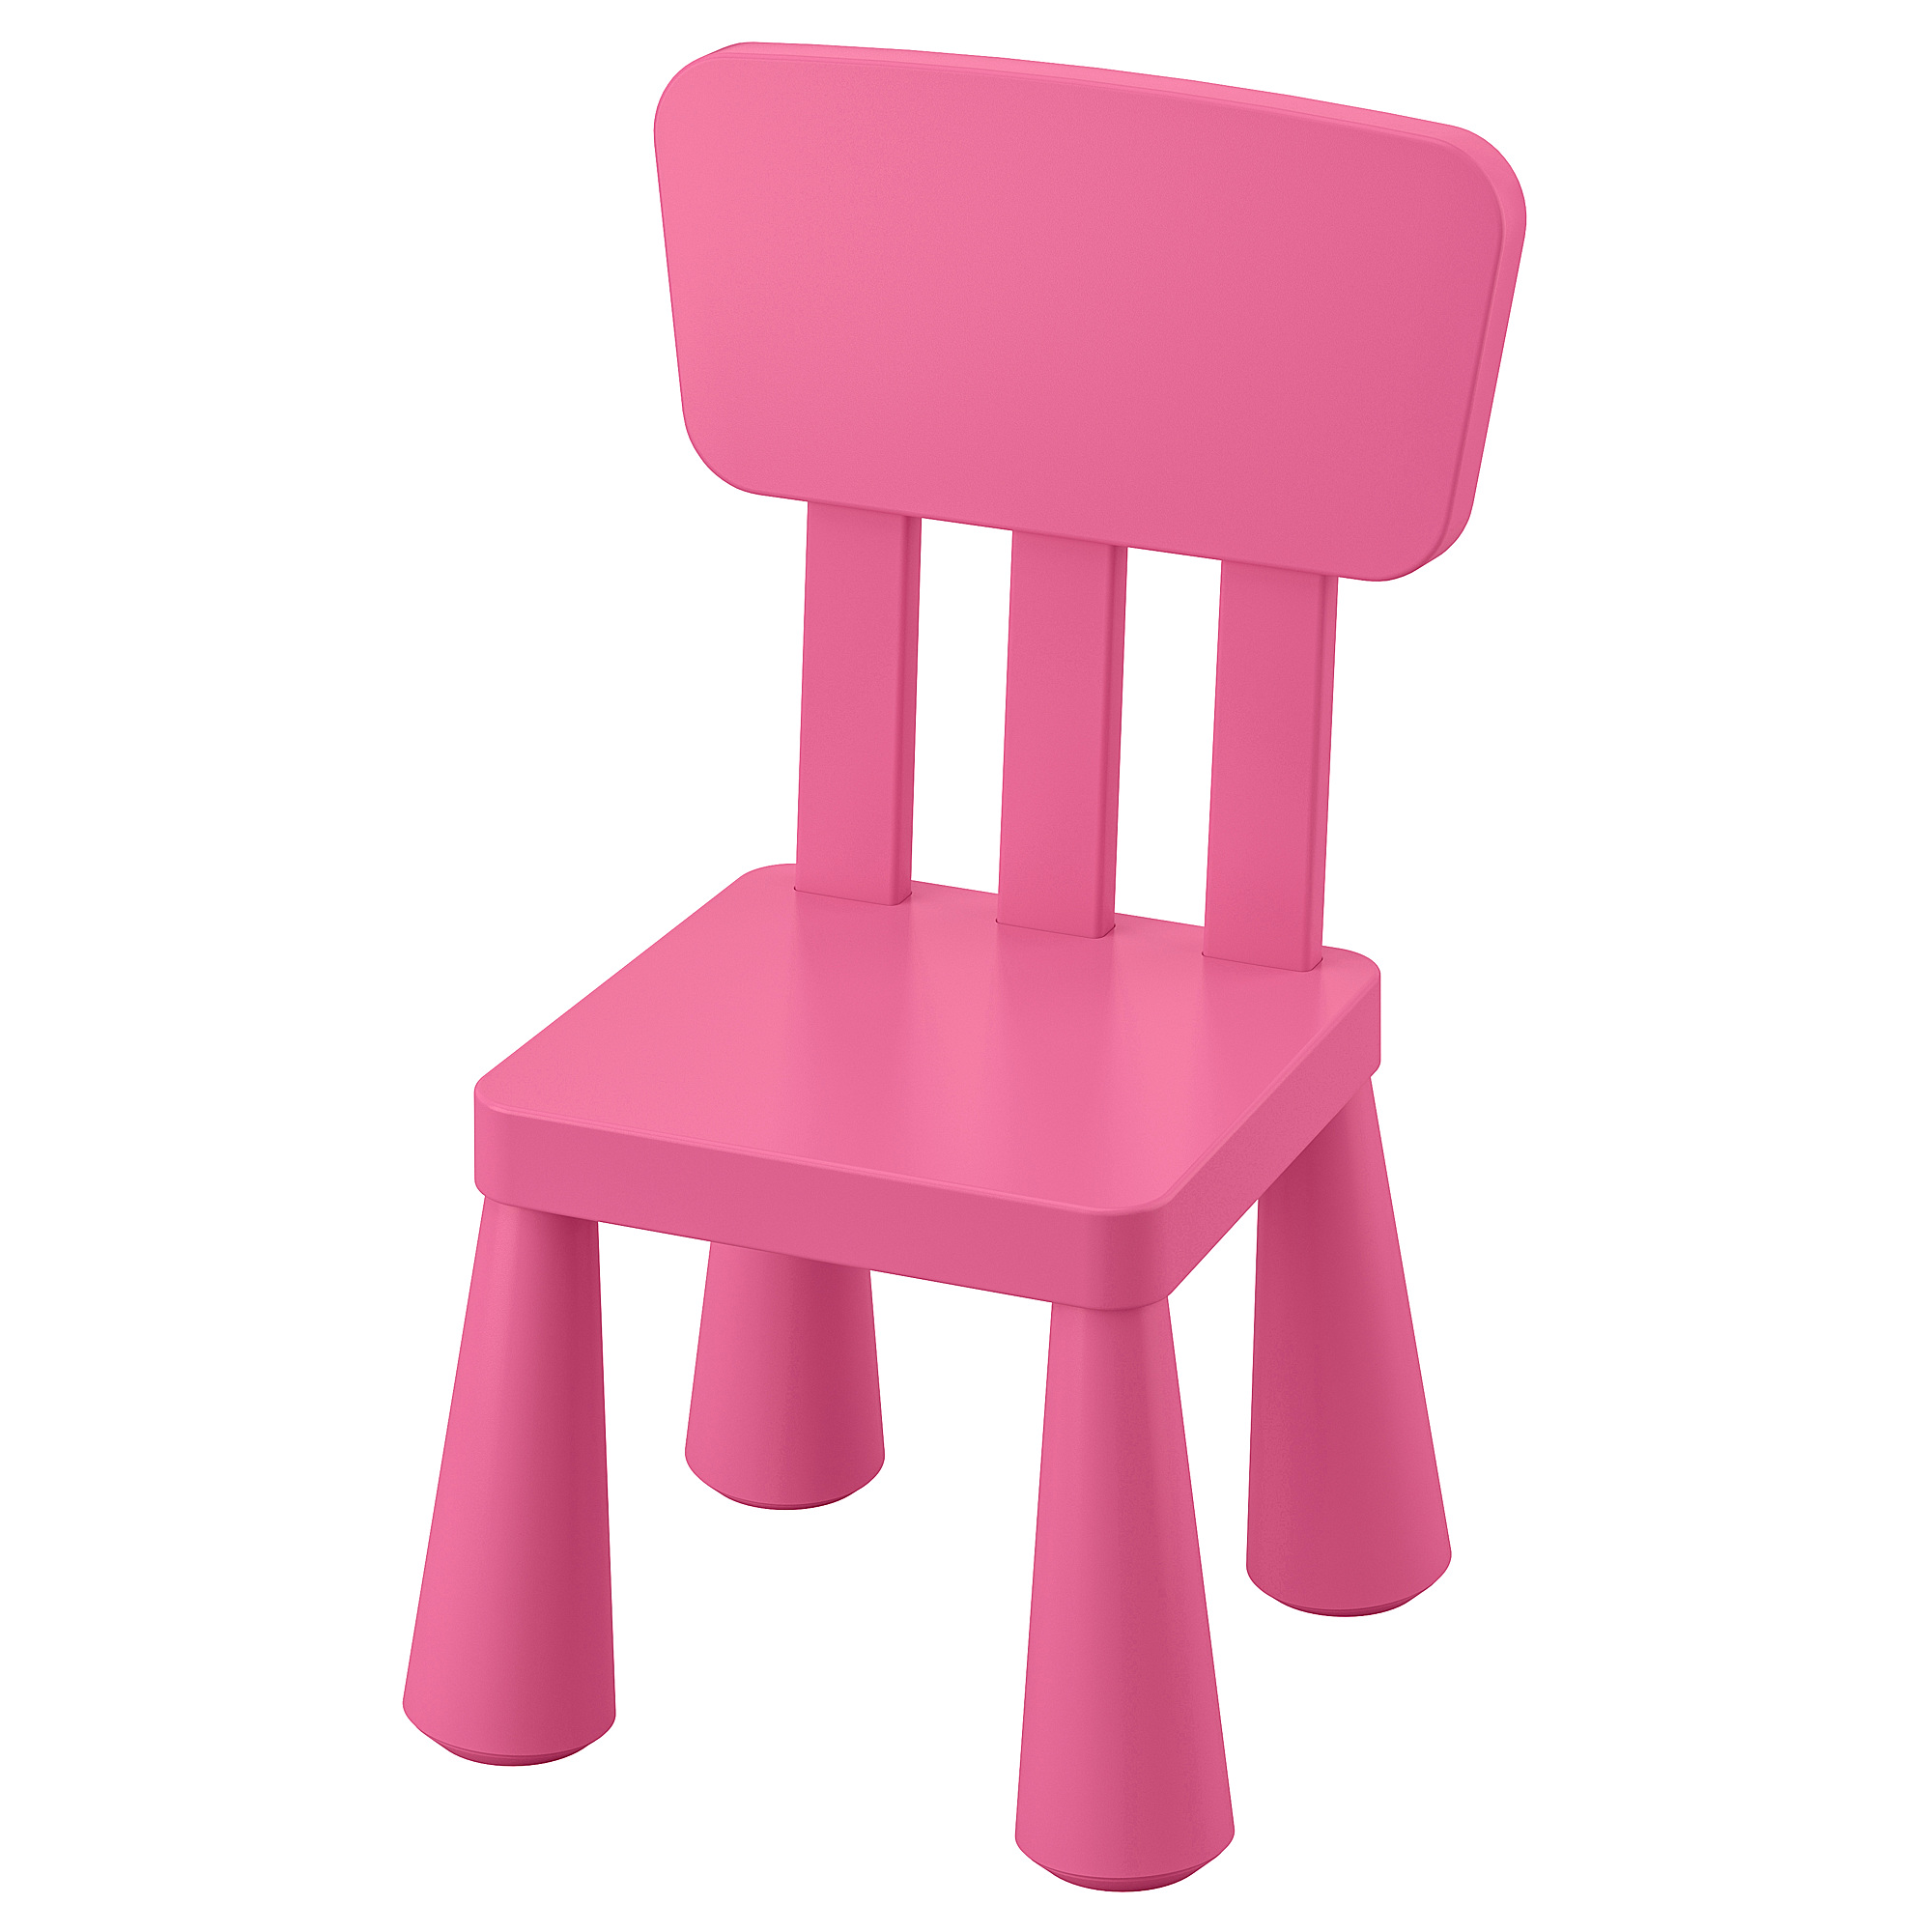 MAMMUT children's chair